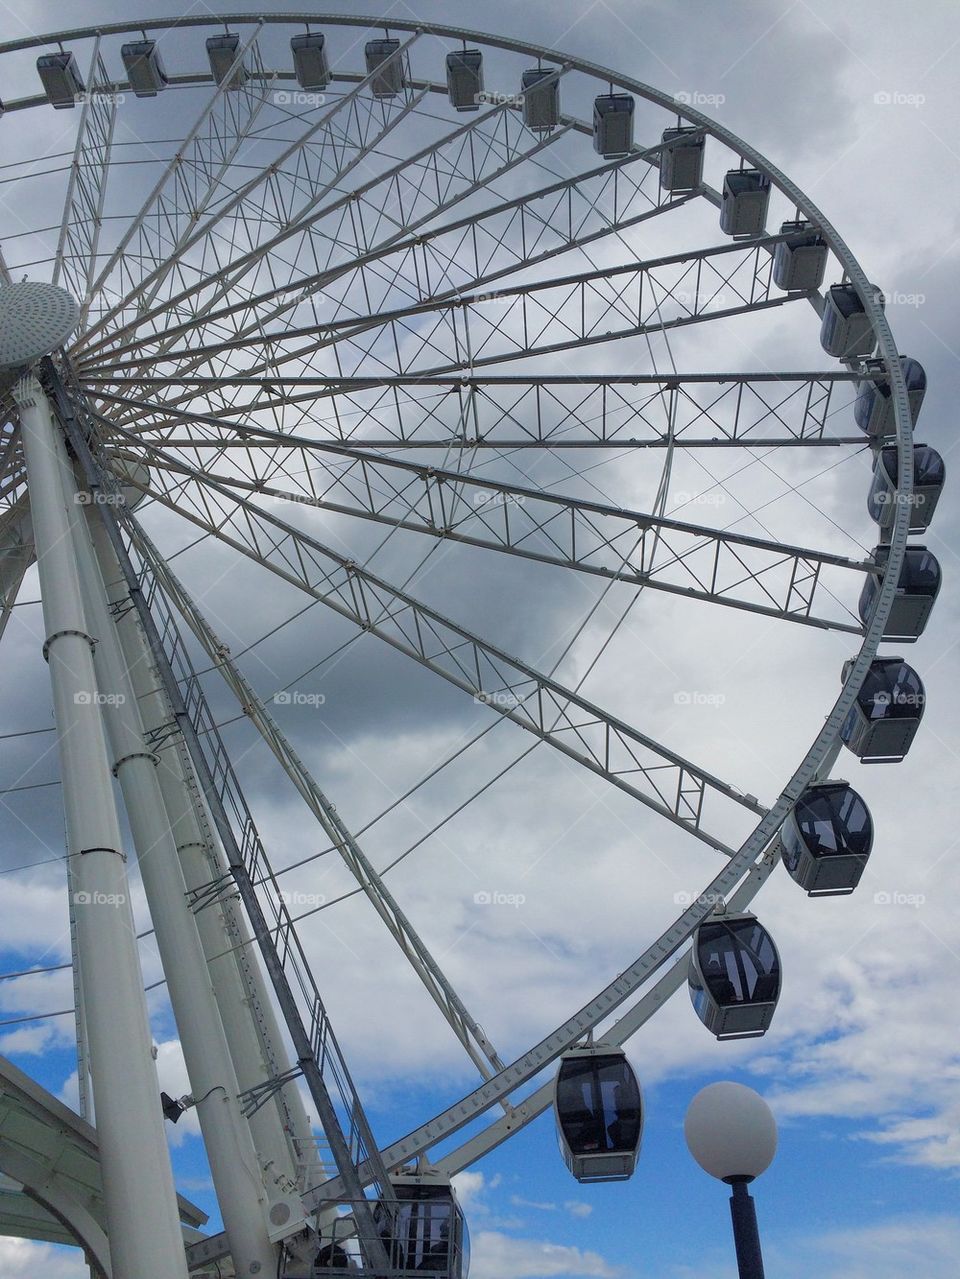 Seattle great wheel 